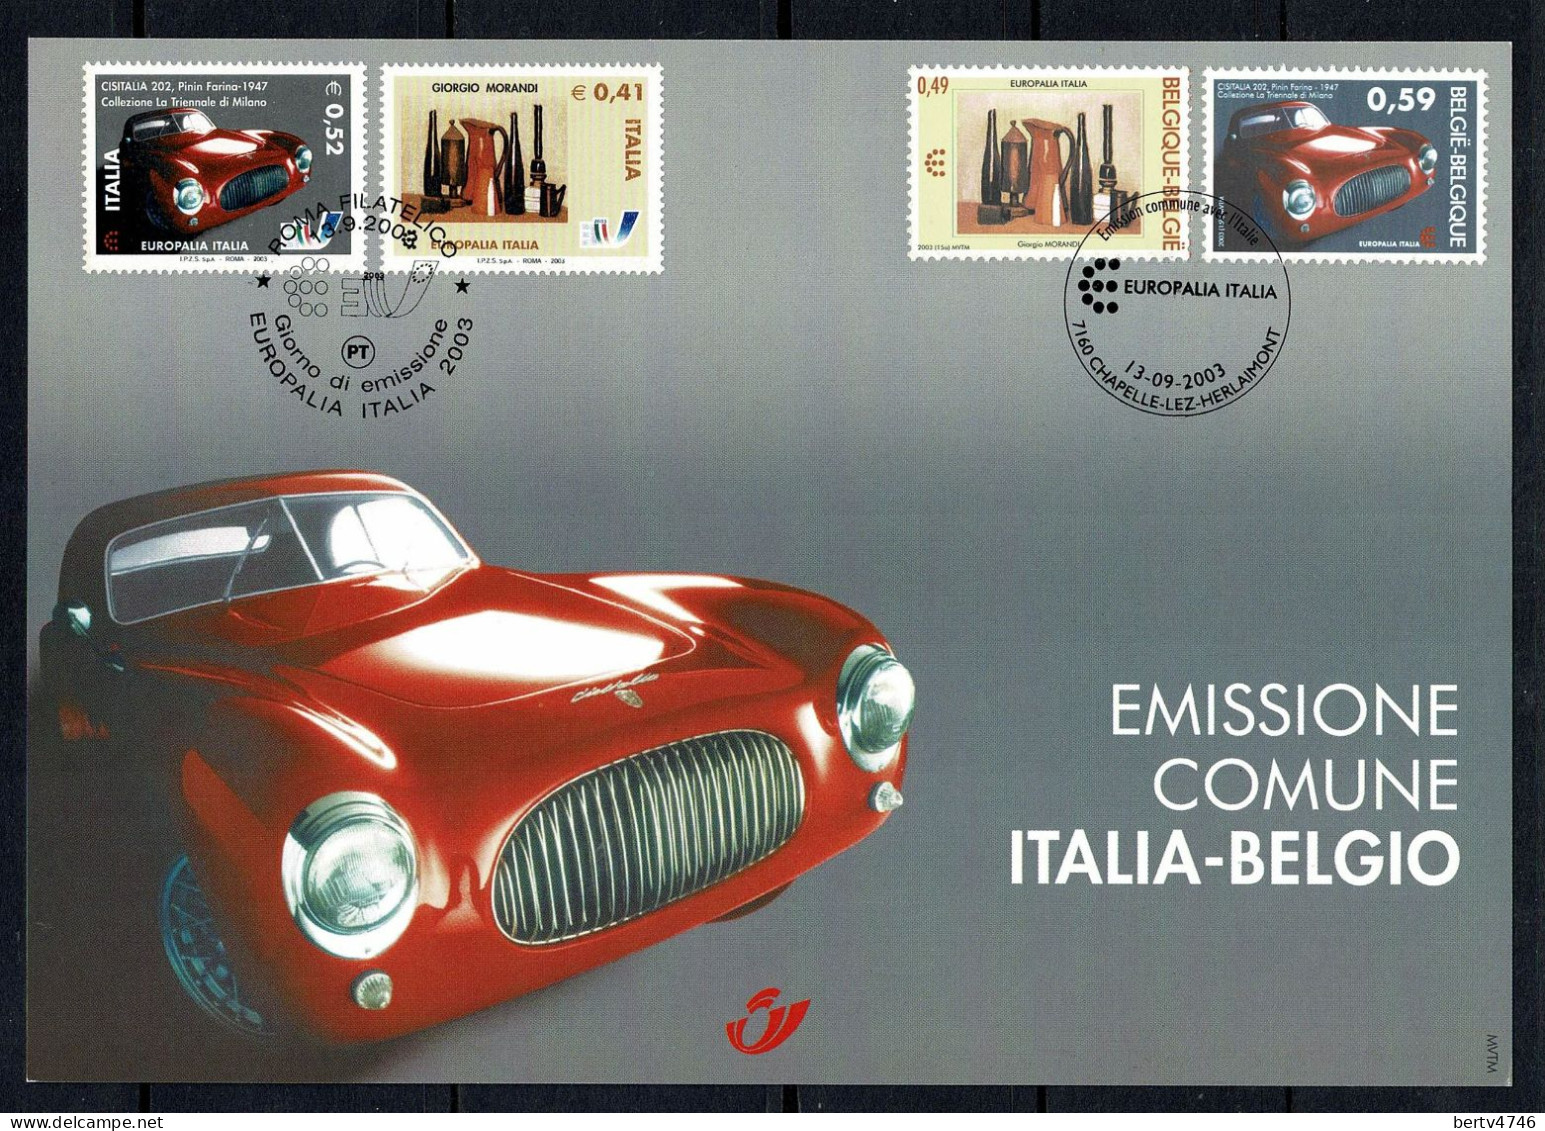 Belg. 2003 - 3205HK België/Italië - Belgique/Italie - Cartes Souvenir – Emissions Communes [HK]